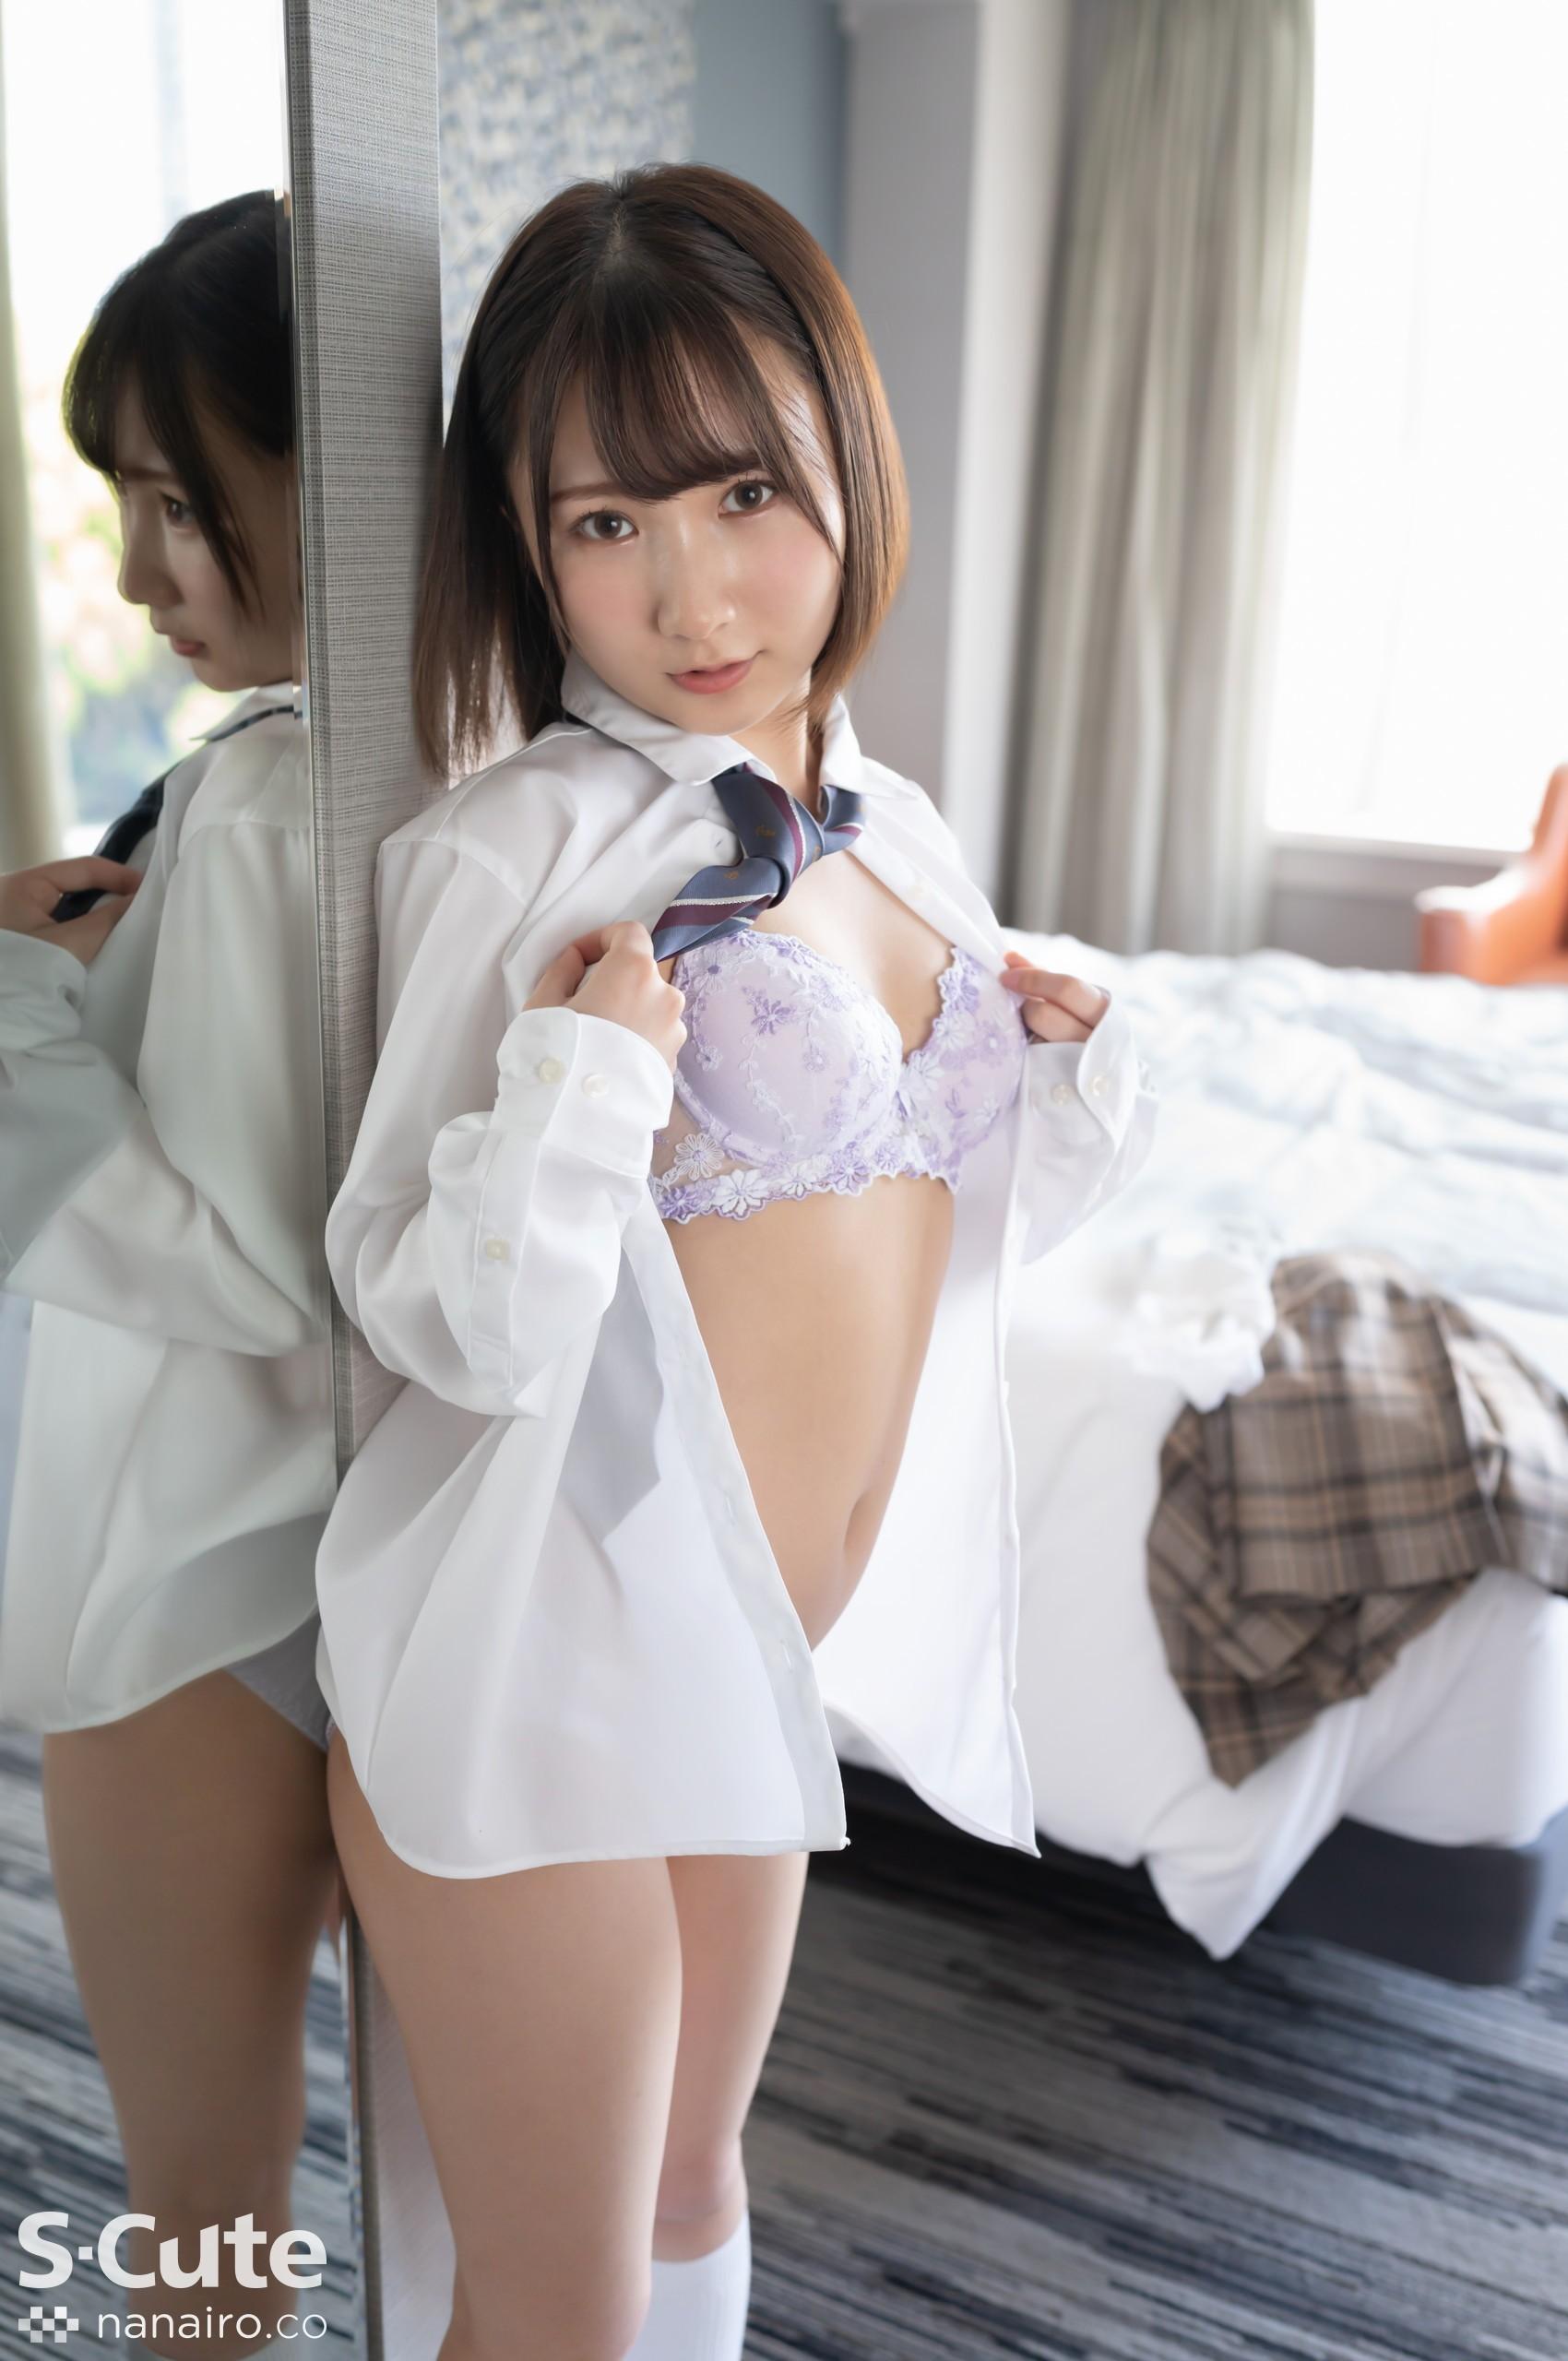 S-Cute 922_kana_02 वयस्क सेक्स / काना एक समान सुंदर लड़की को जिसे केवल सक्रिय कर्तव्य में देखा जा सकता है